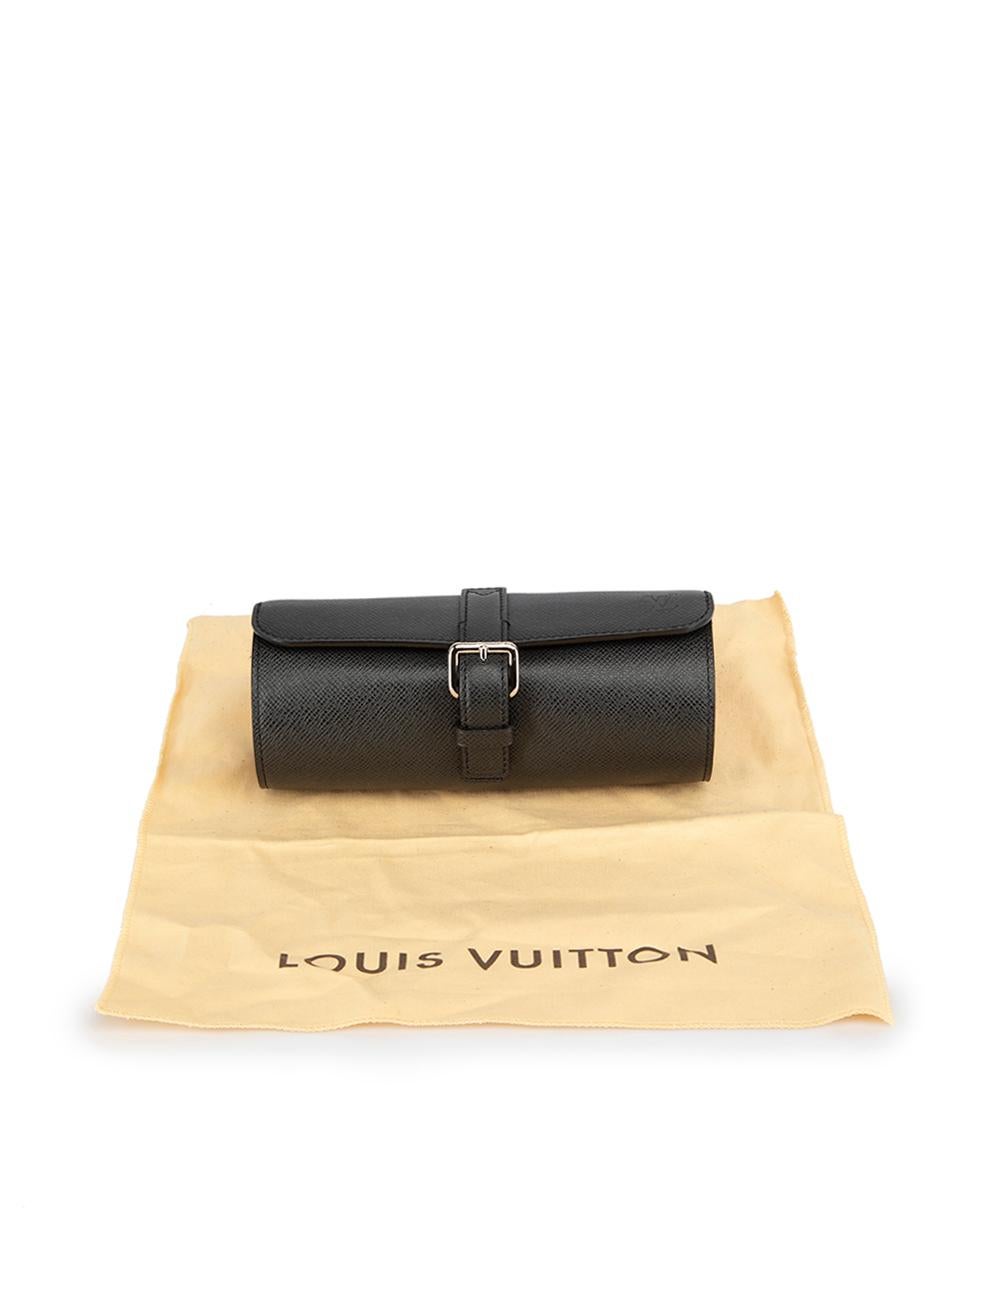 Louis Vuitton Black Leather Watch Case 2